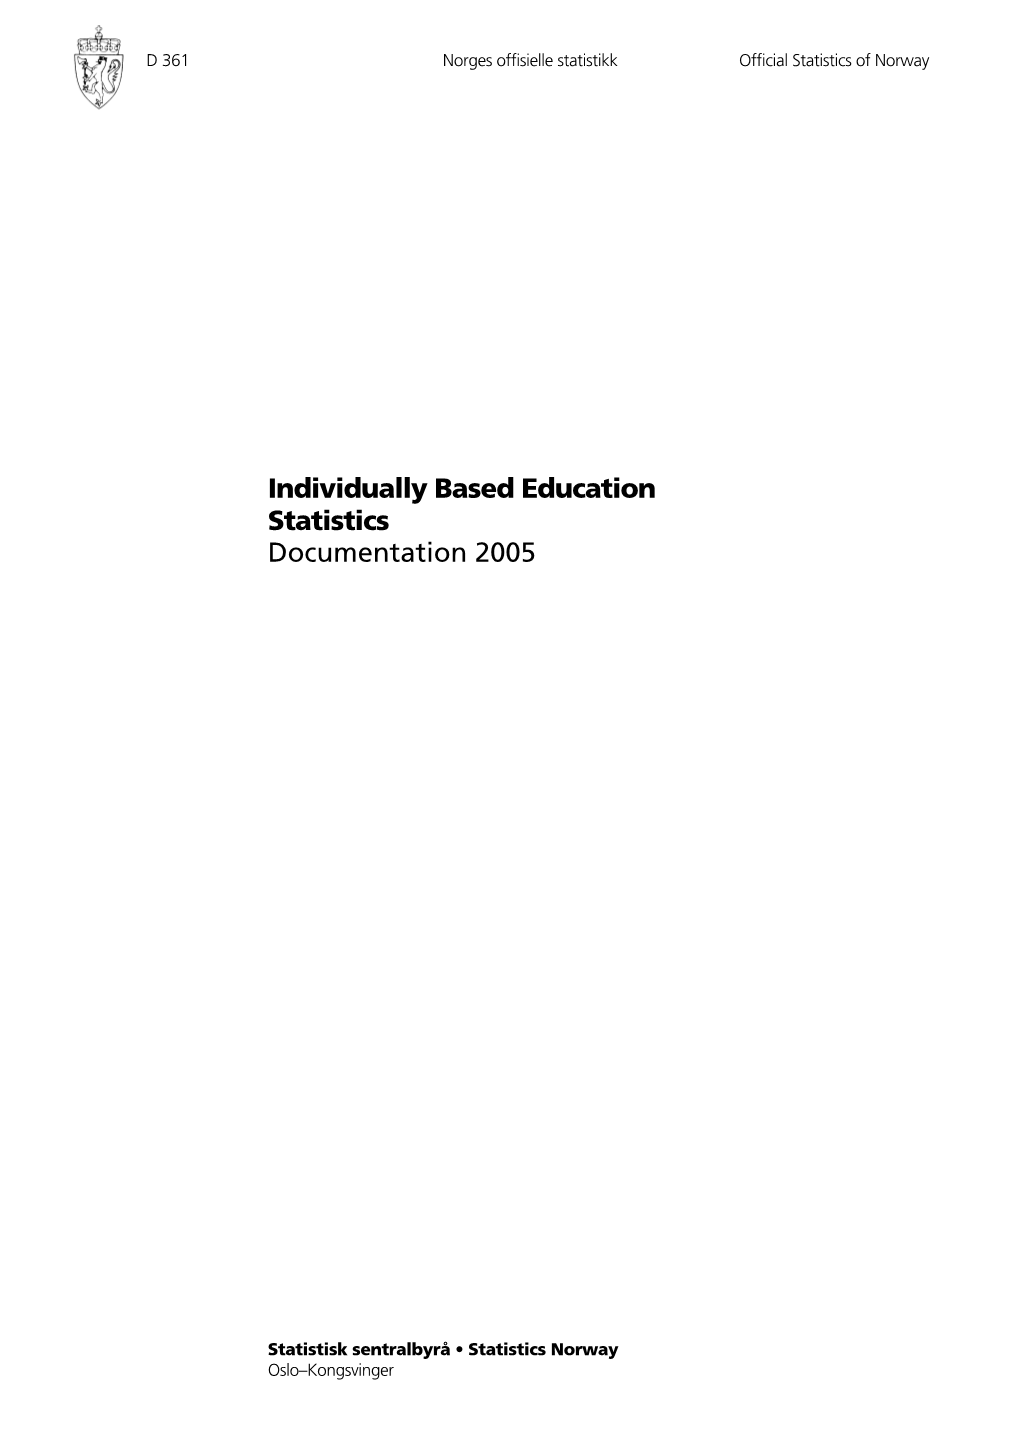 Individually Based Education Statistics Documentation 2005